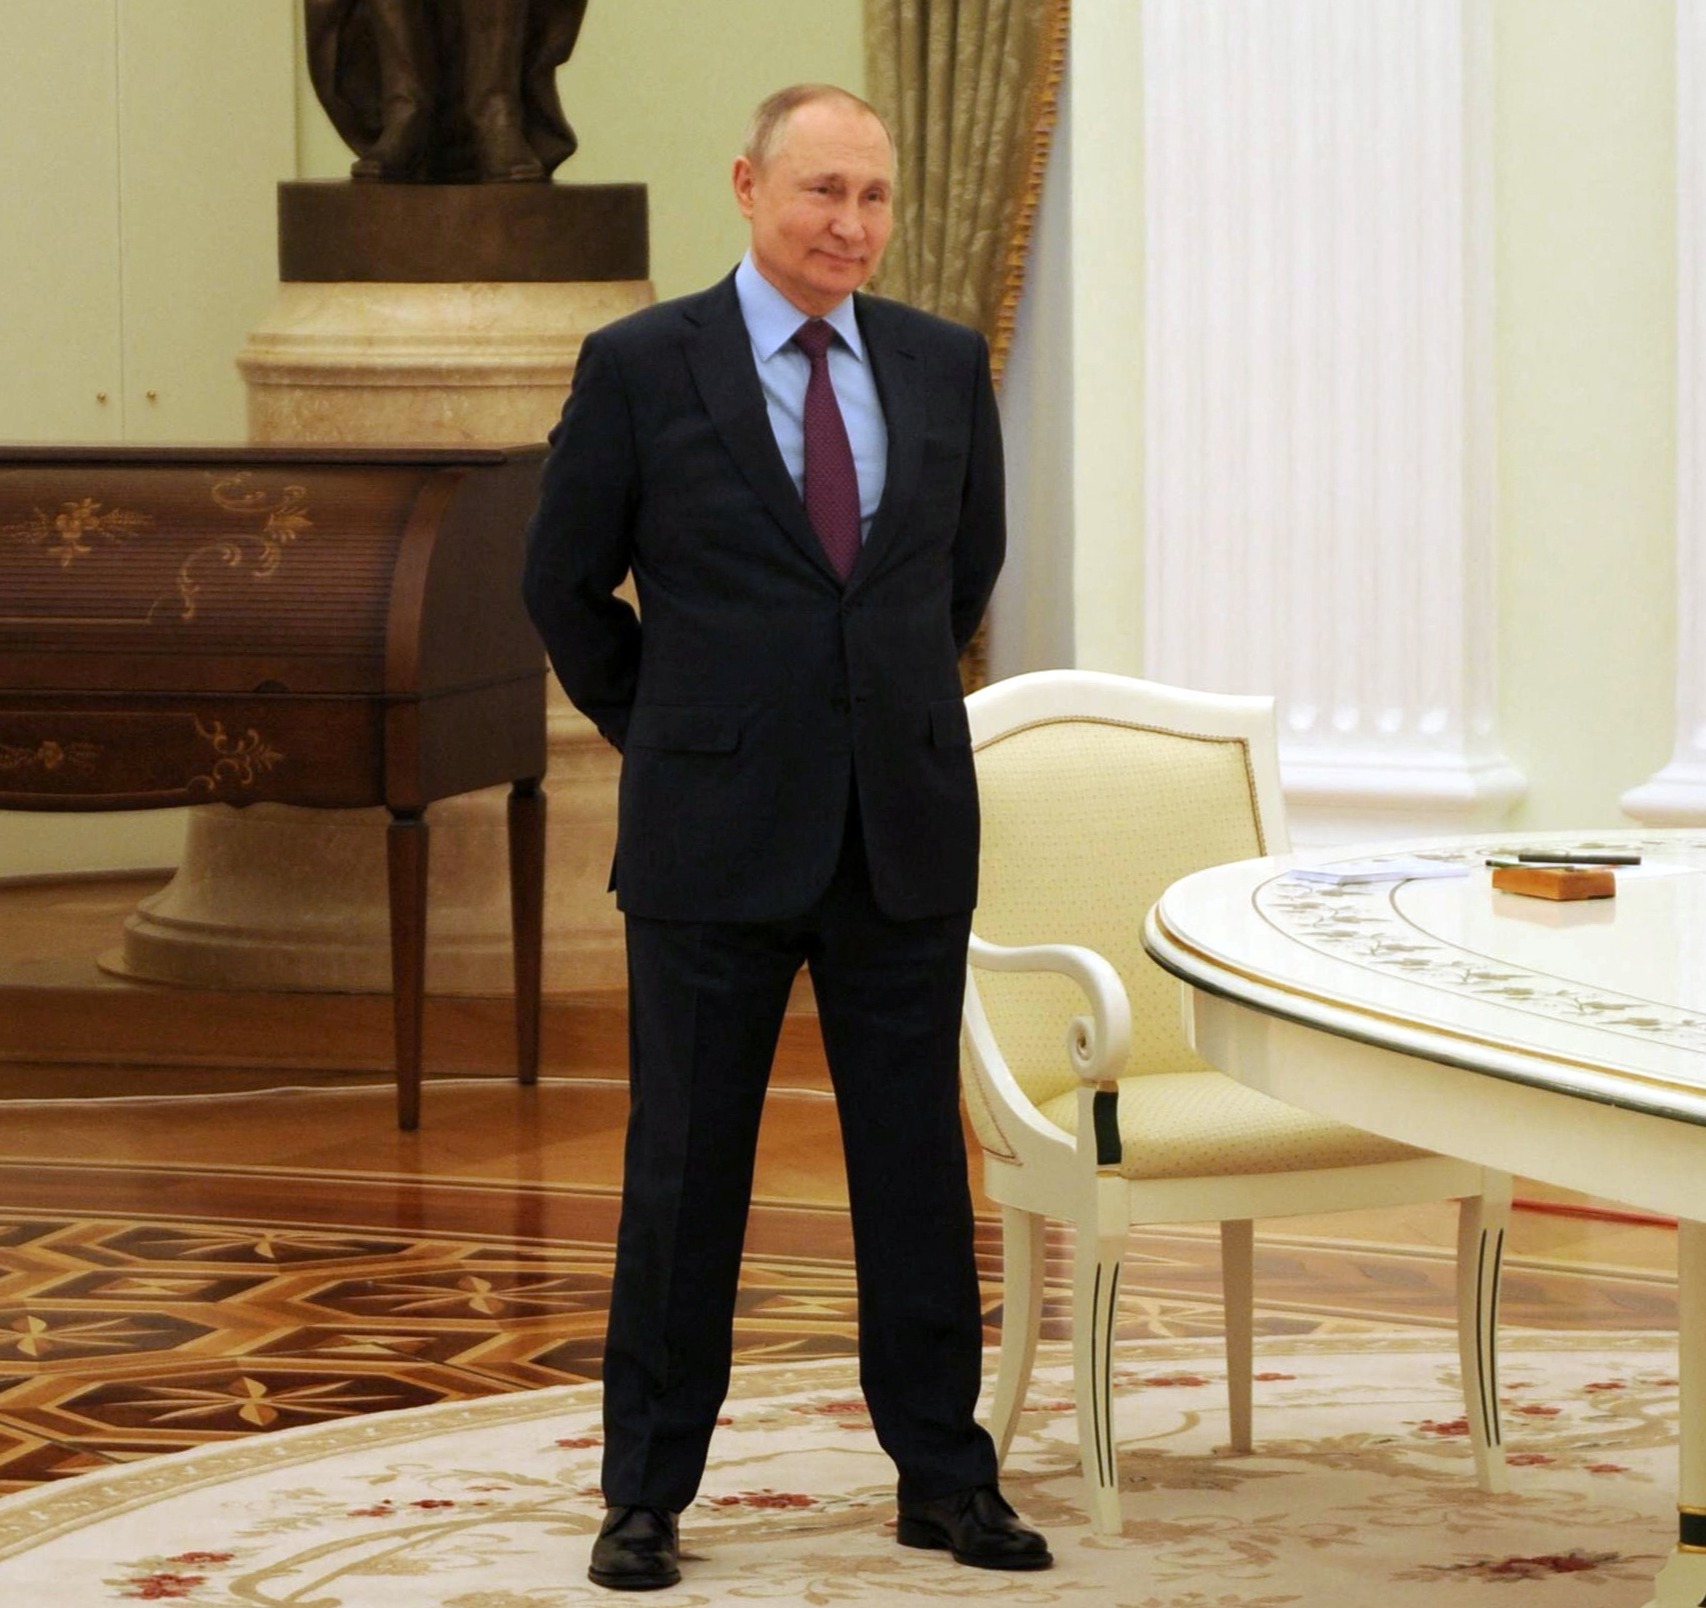 El mundo está esperando el próximo movimiento de Vladimir Putin